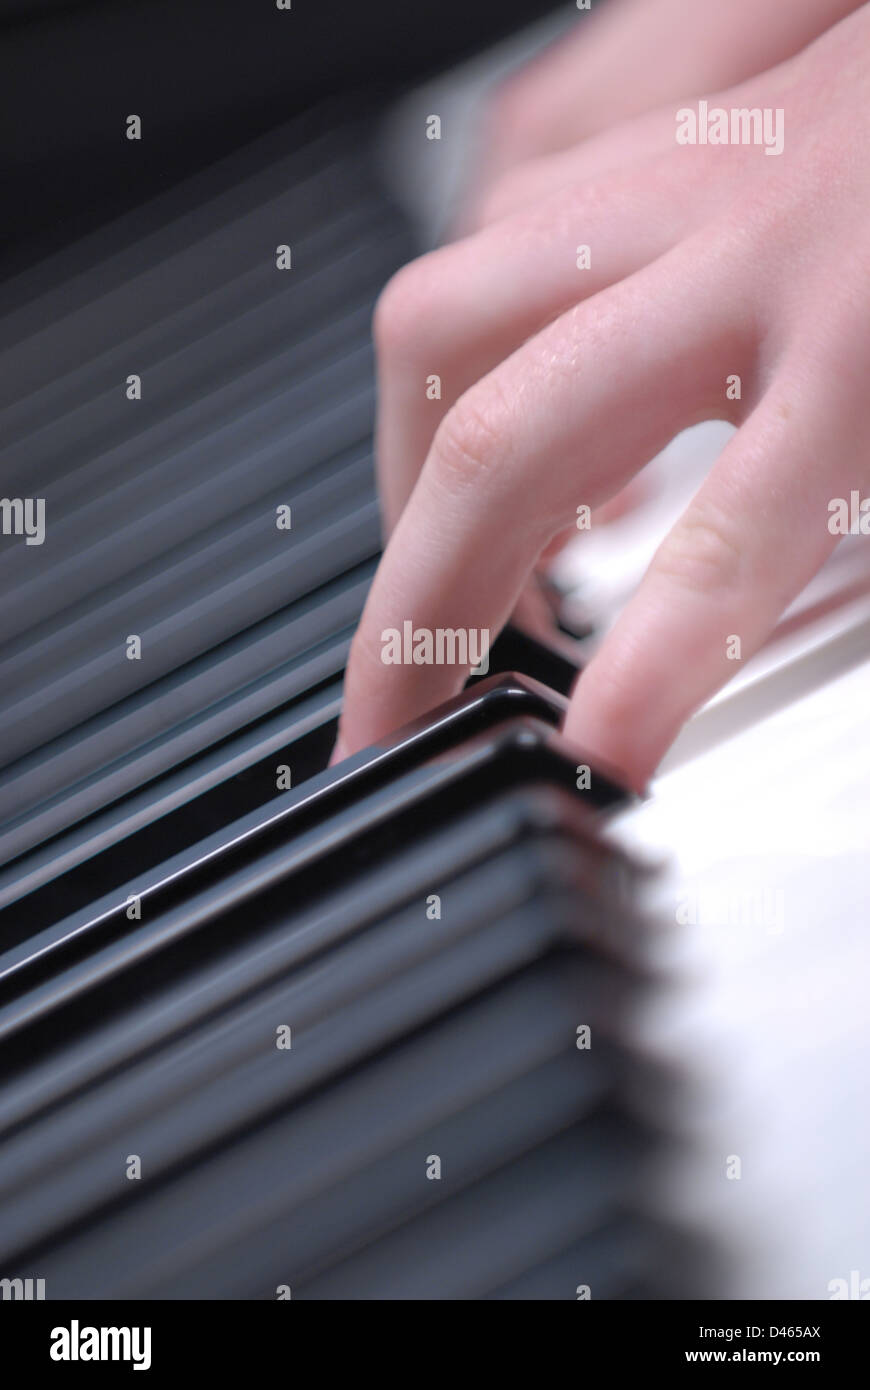 Hände auf den Tasten eines Klaviers, musizieren, Unterricht Stockfoto